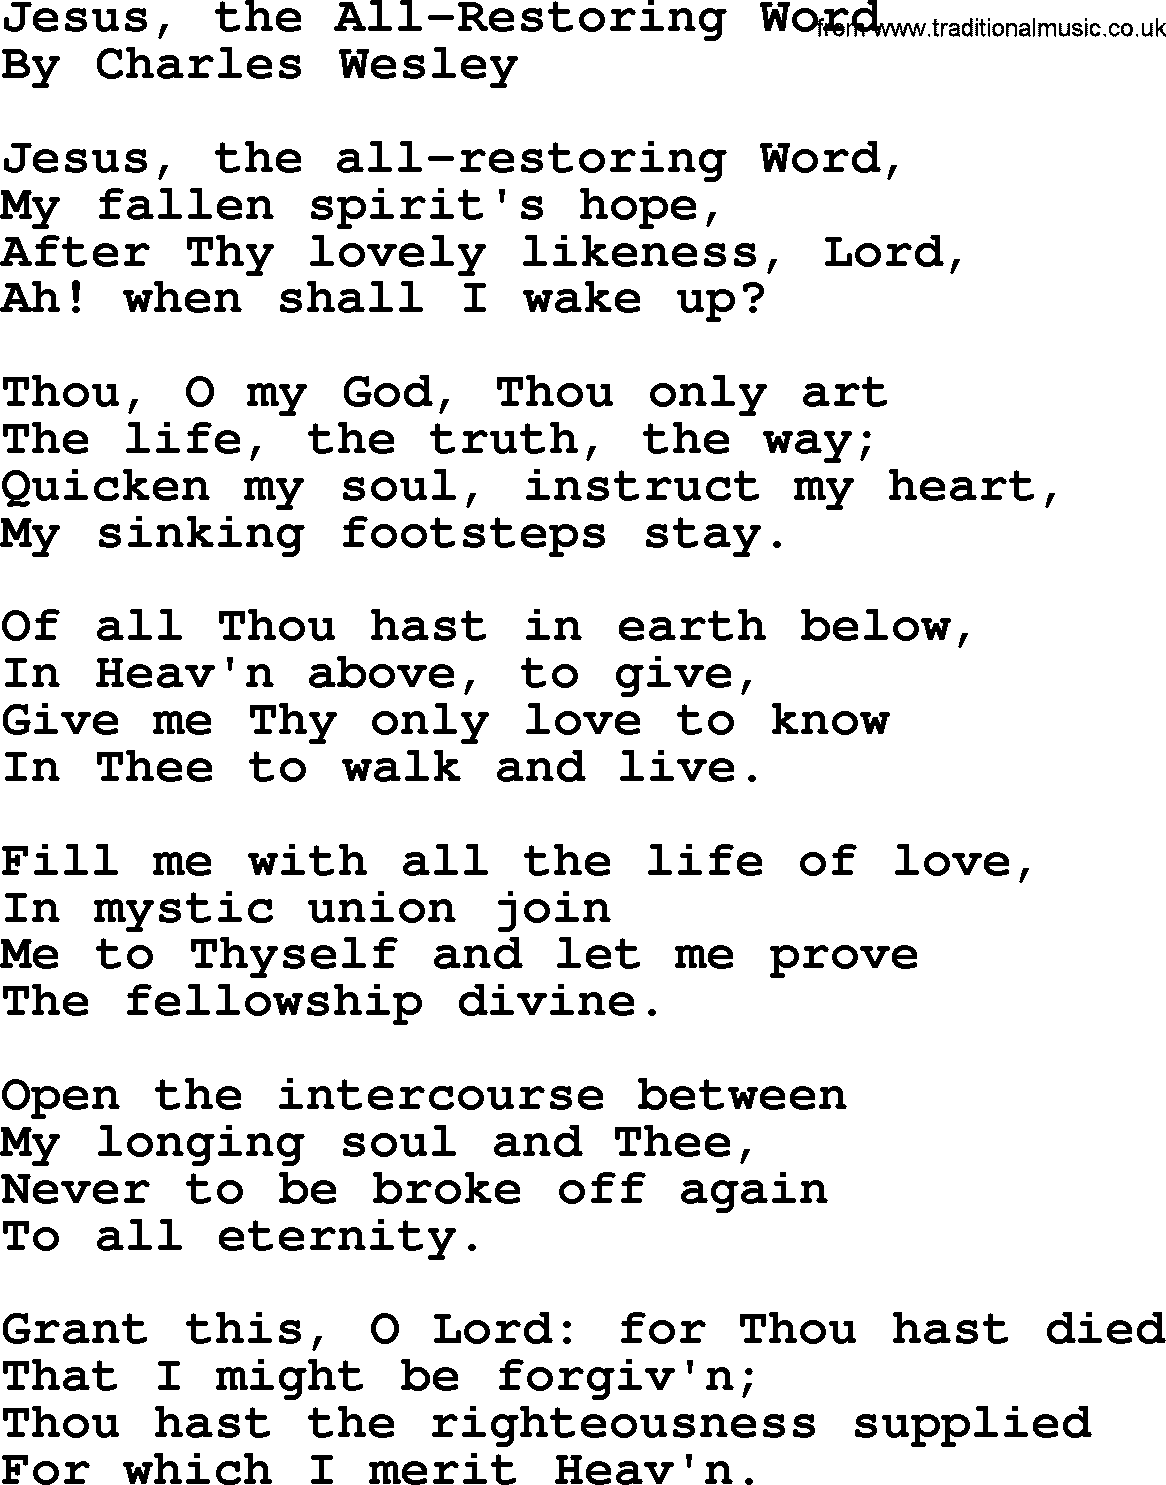 Charles Wesley hymn: Jesus, The All-Restoring Word, lyrics